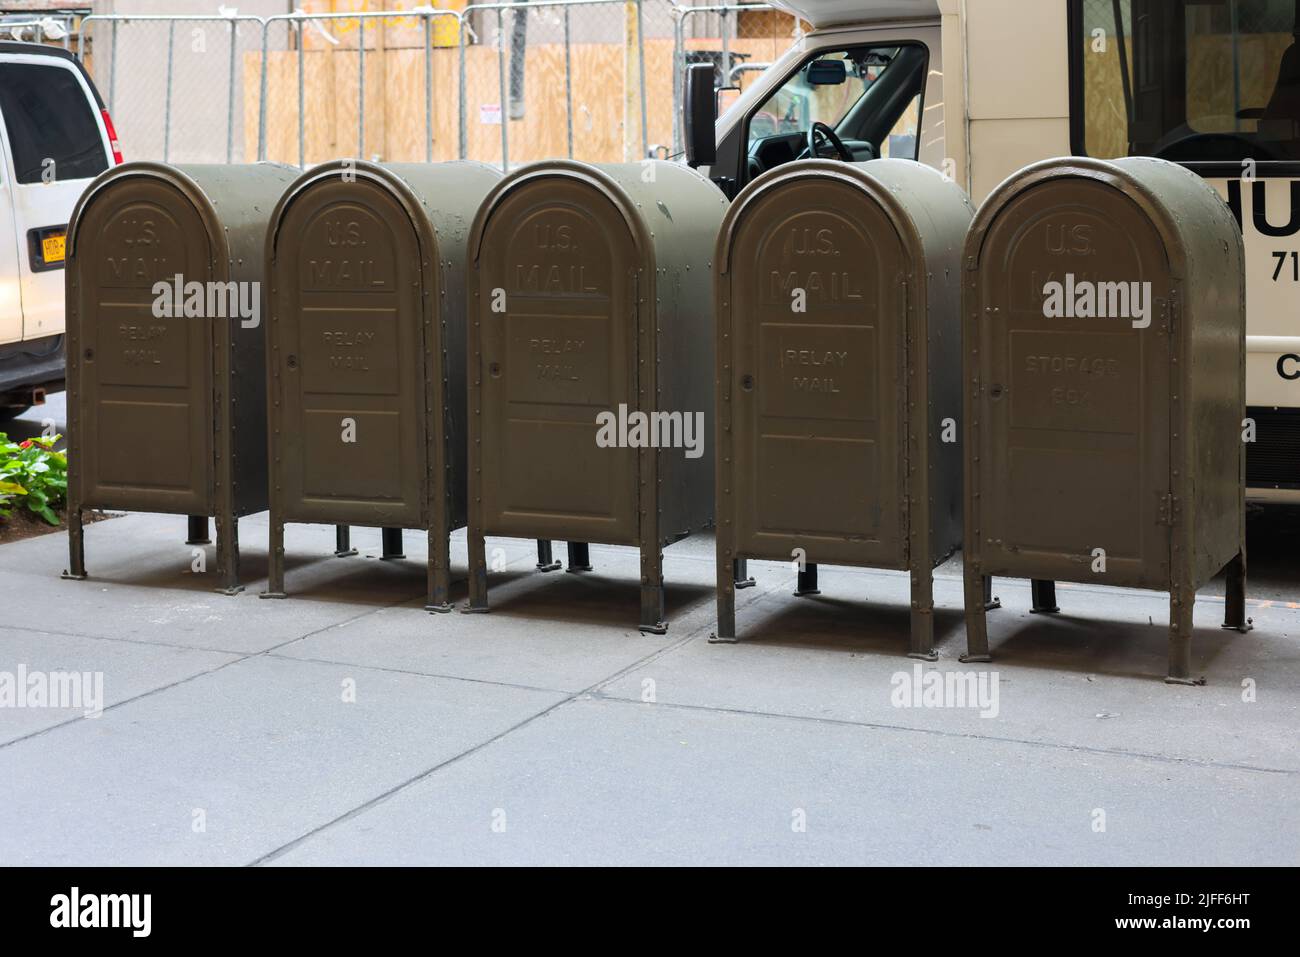 Une rangée de cinq boîtes aux lettres relais USPS de stockage postal en métal dans une rue Banque D'Images